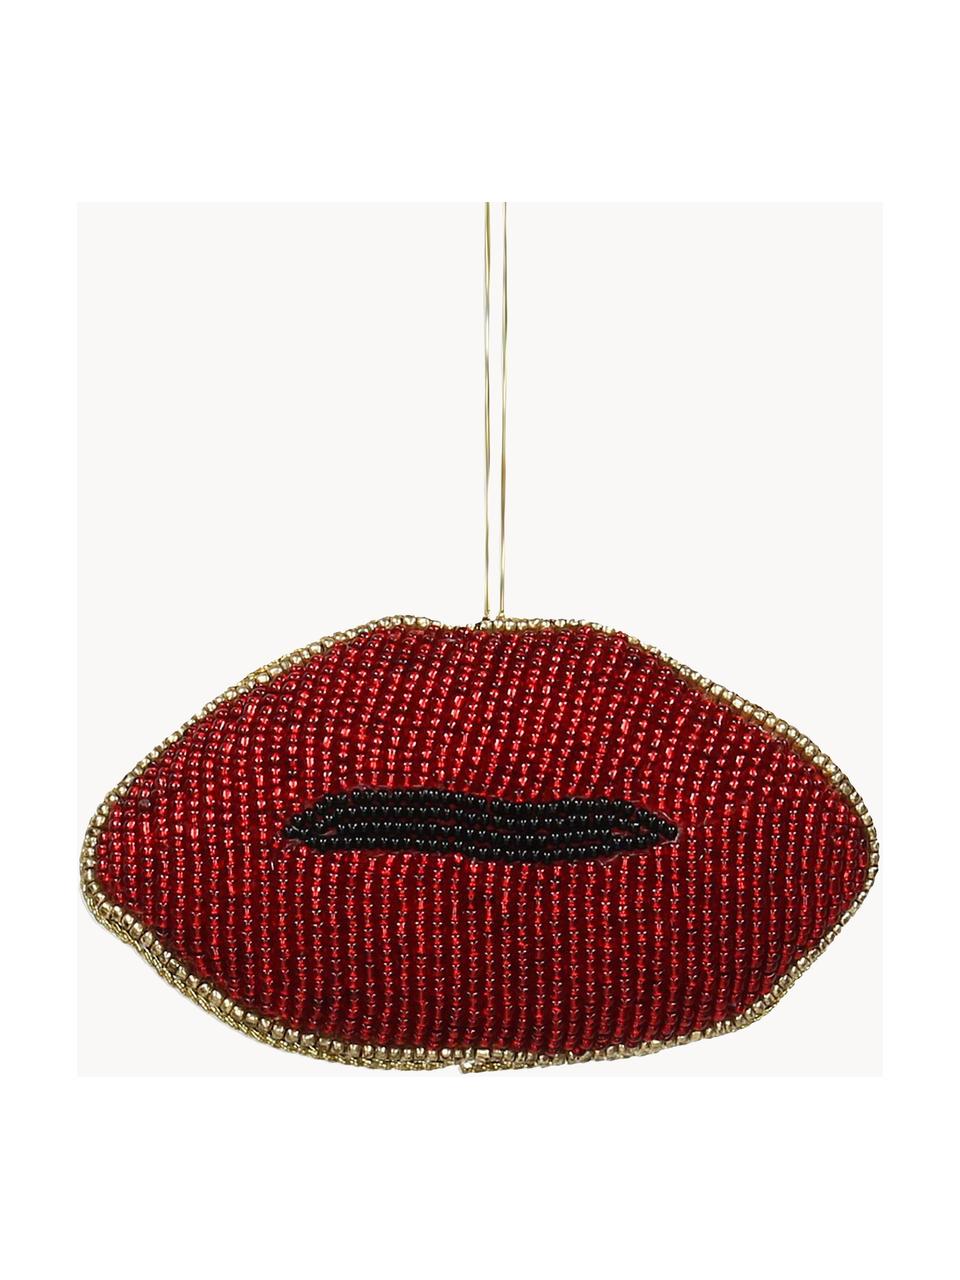 Adornos navideños Lips, 2 uds., Cuentas de vidrio, Rojo, negro, dorado, An 11 x Al 6 cm